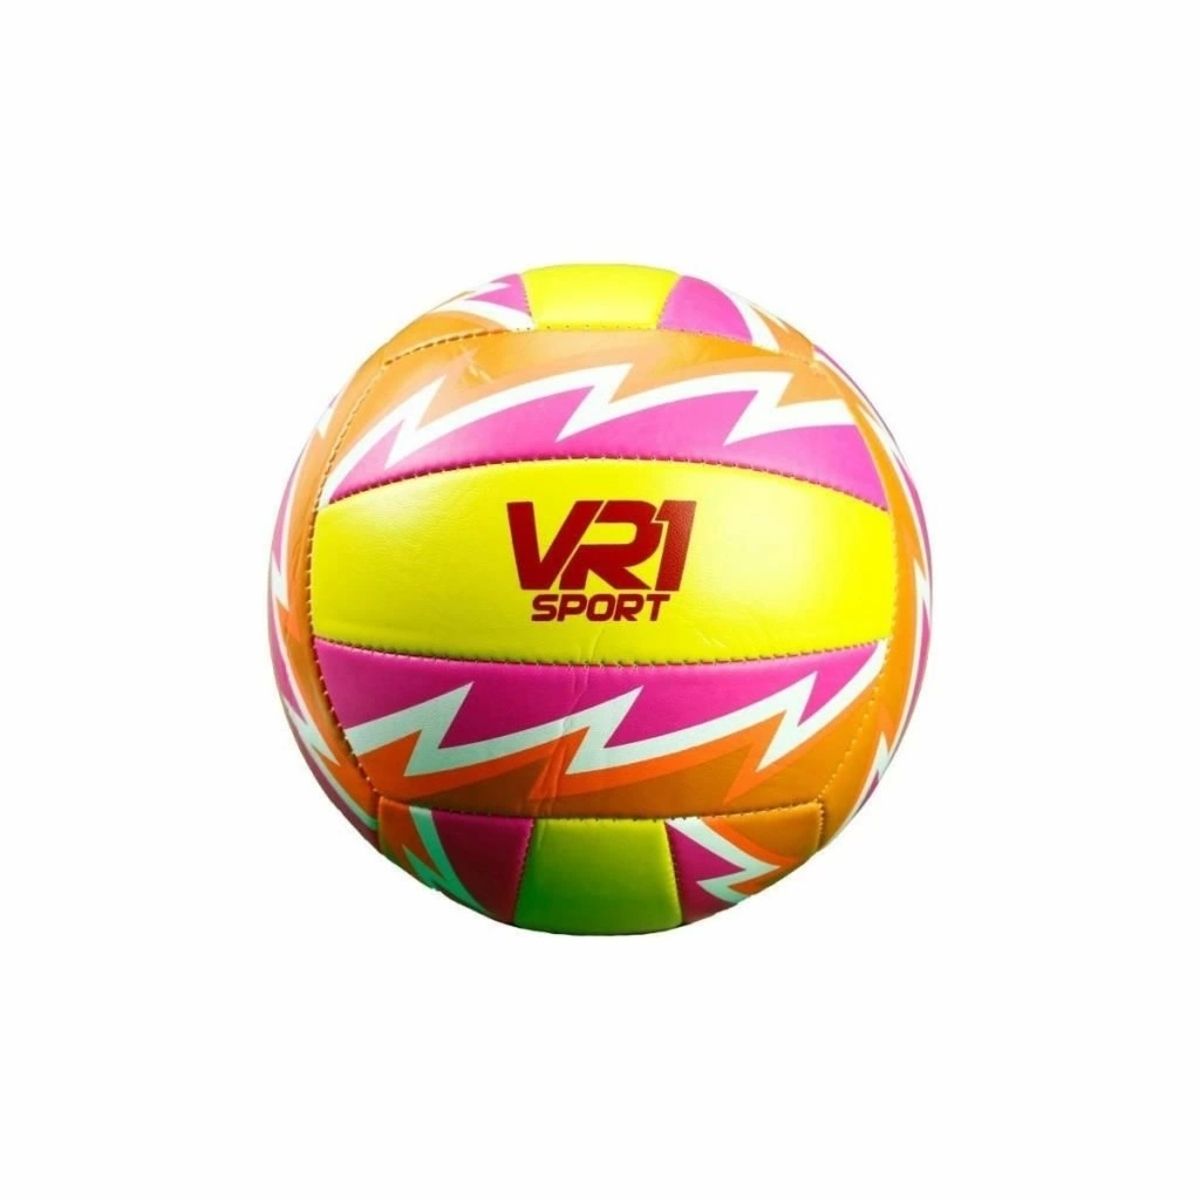 VARDEM OYUNCAK XL-02 VR1 Sport Voleybol Topu No: 5